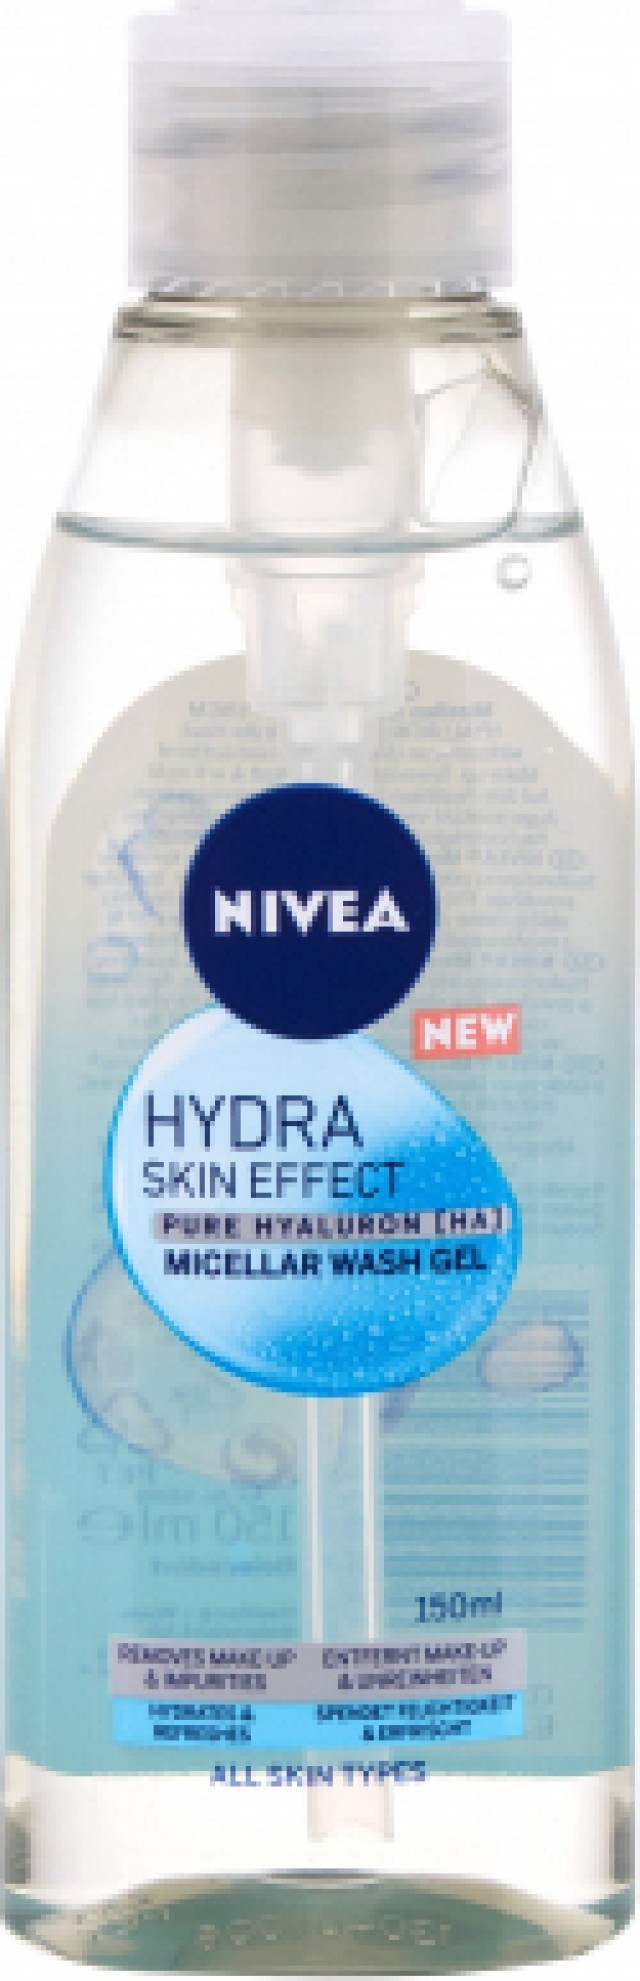 Nivea Hydra Skin Effect Micellar Wash Gel Καθαρισμού - Ντεμακιγιάζ Προσώπου για Όλους τους Τύπους Επιδερμίδας 150ml